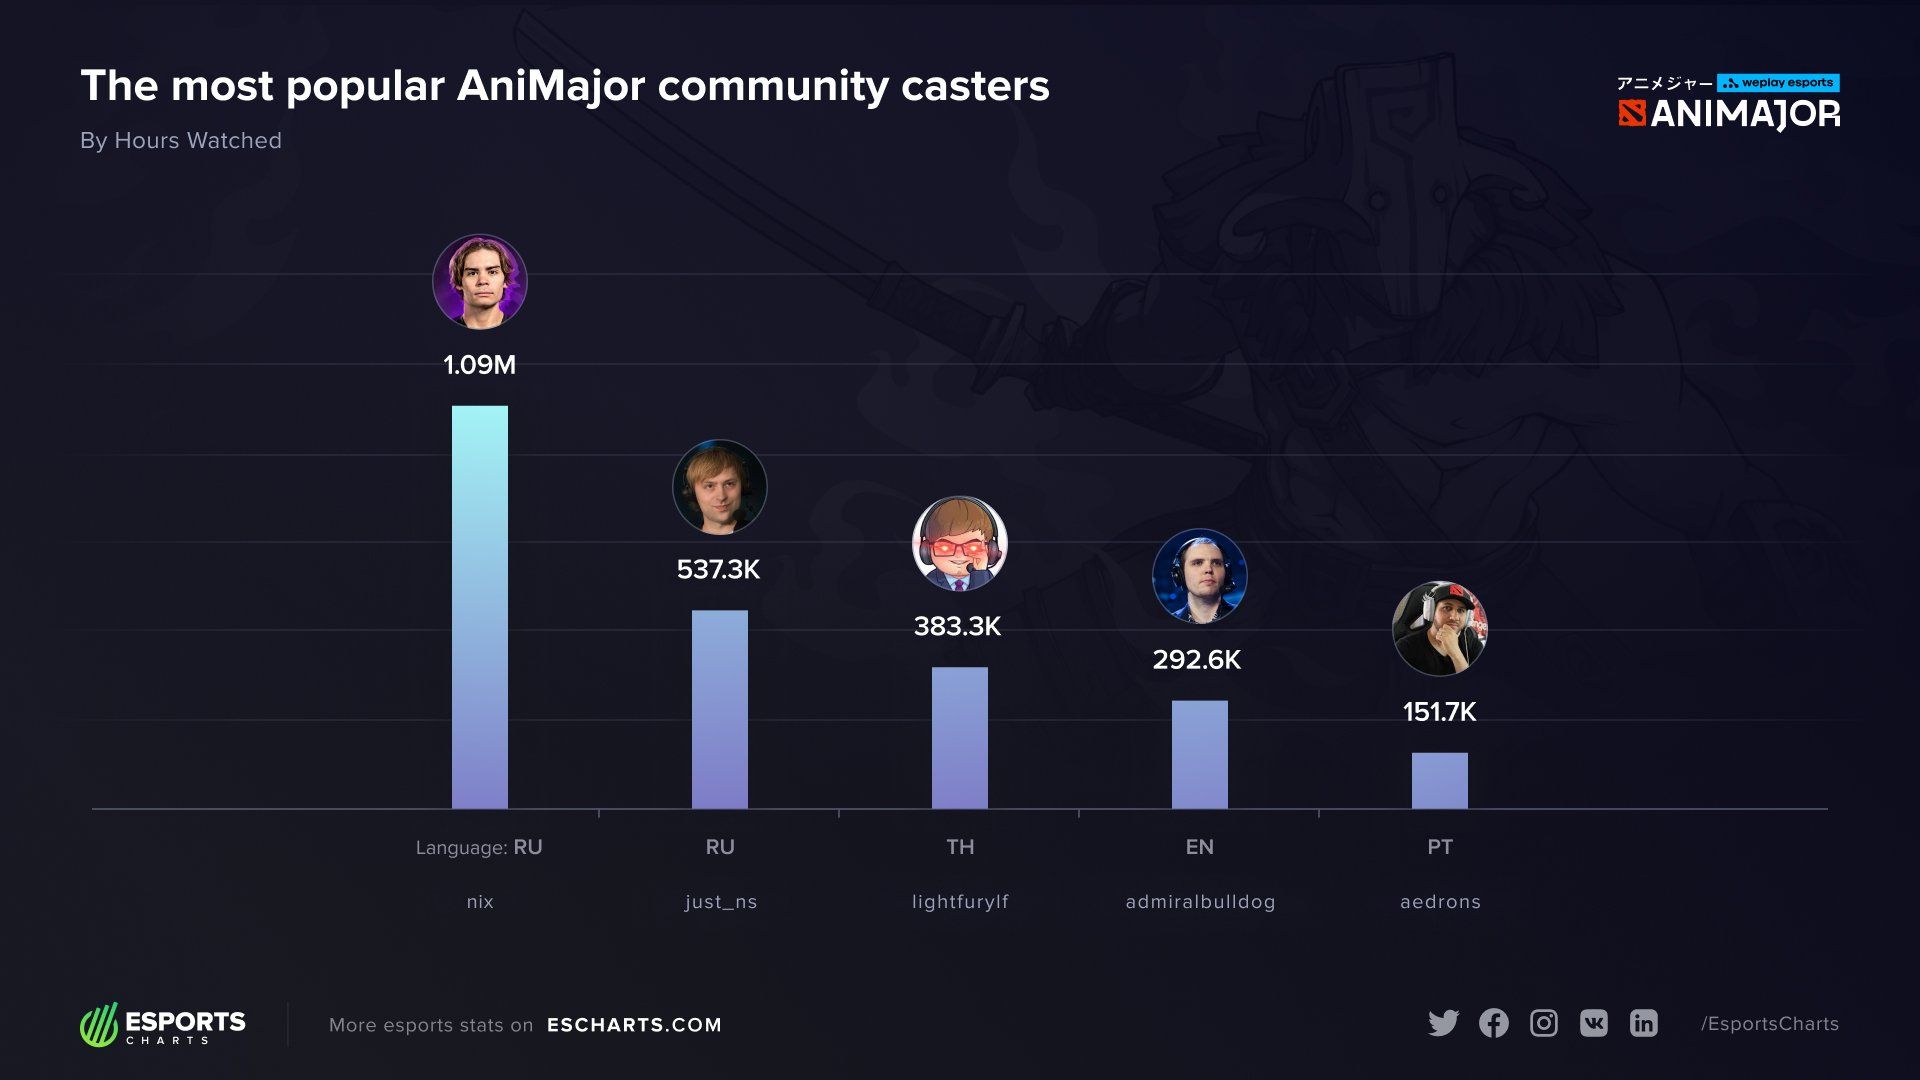 Самые популярные комьюнити-кастеры WePlay AniMajor 2021.
Источник: Esports Charts